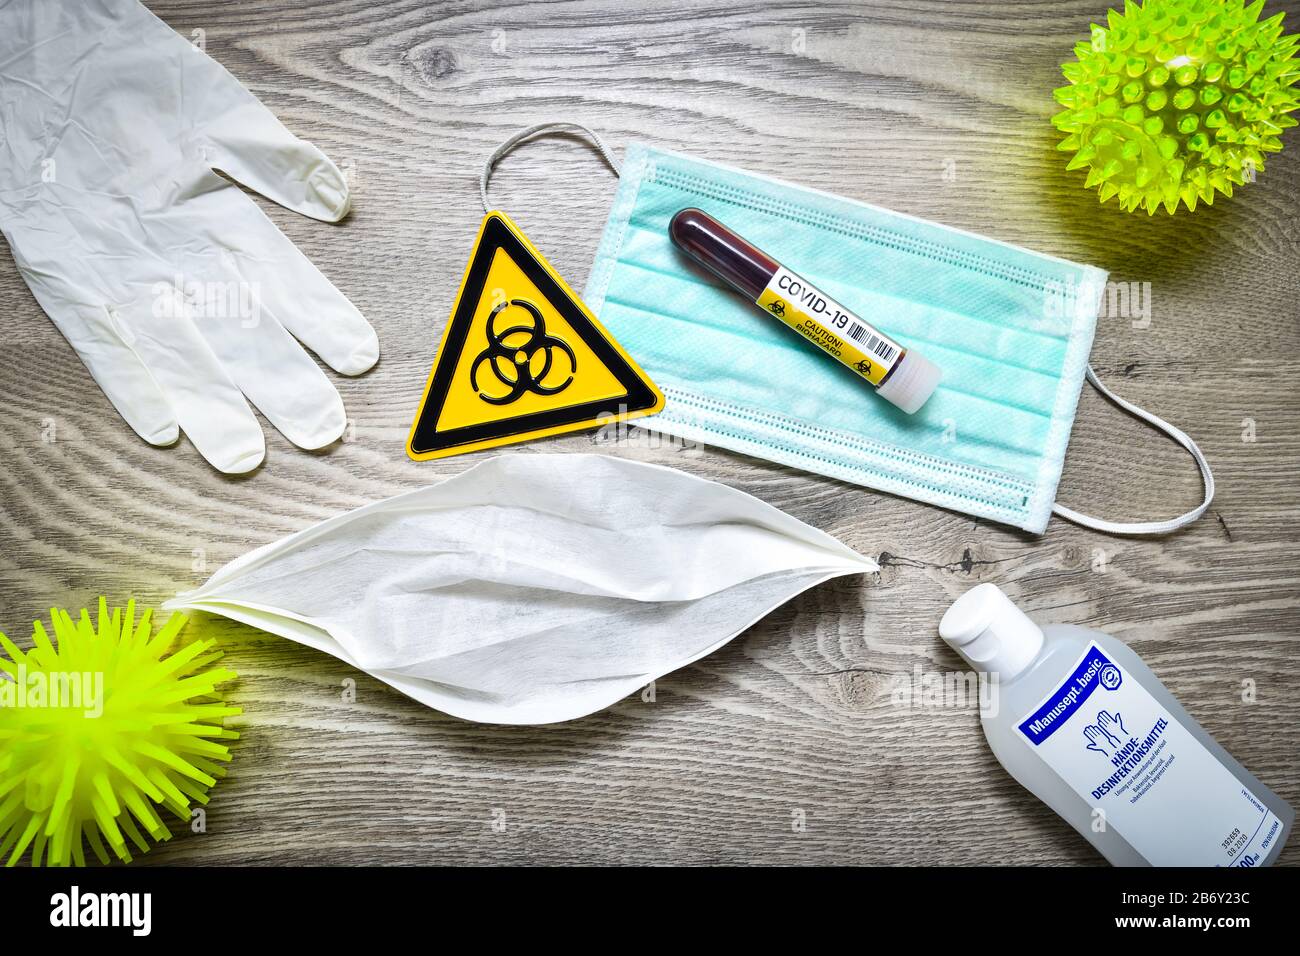 Mundschutz, Blutentnahmeroehrchen, Biogefaehrdungsschild, Schutzhandschuhe  und Desinfektionsmittel auf einem Tisch, Symbolfoto Coronavirus Stock Photo  - Alamy